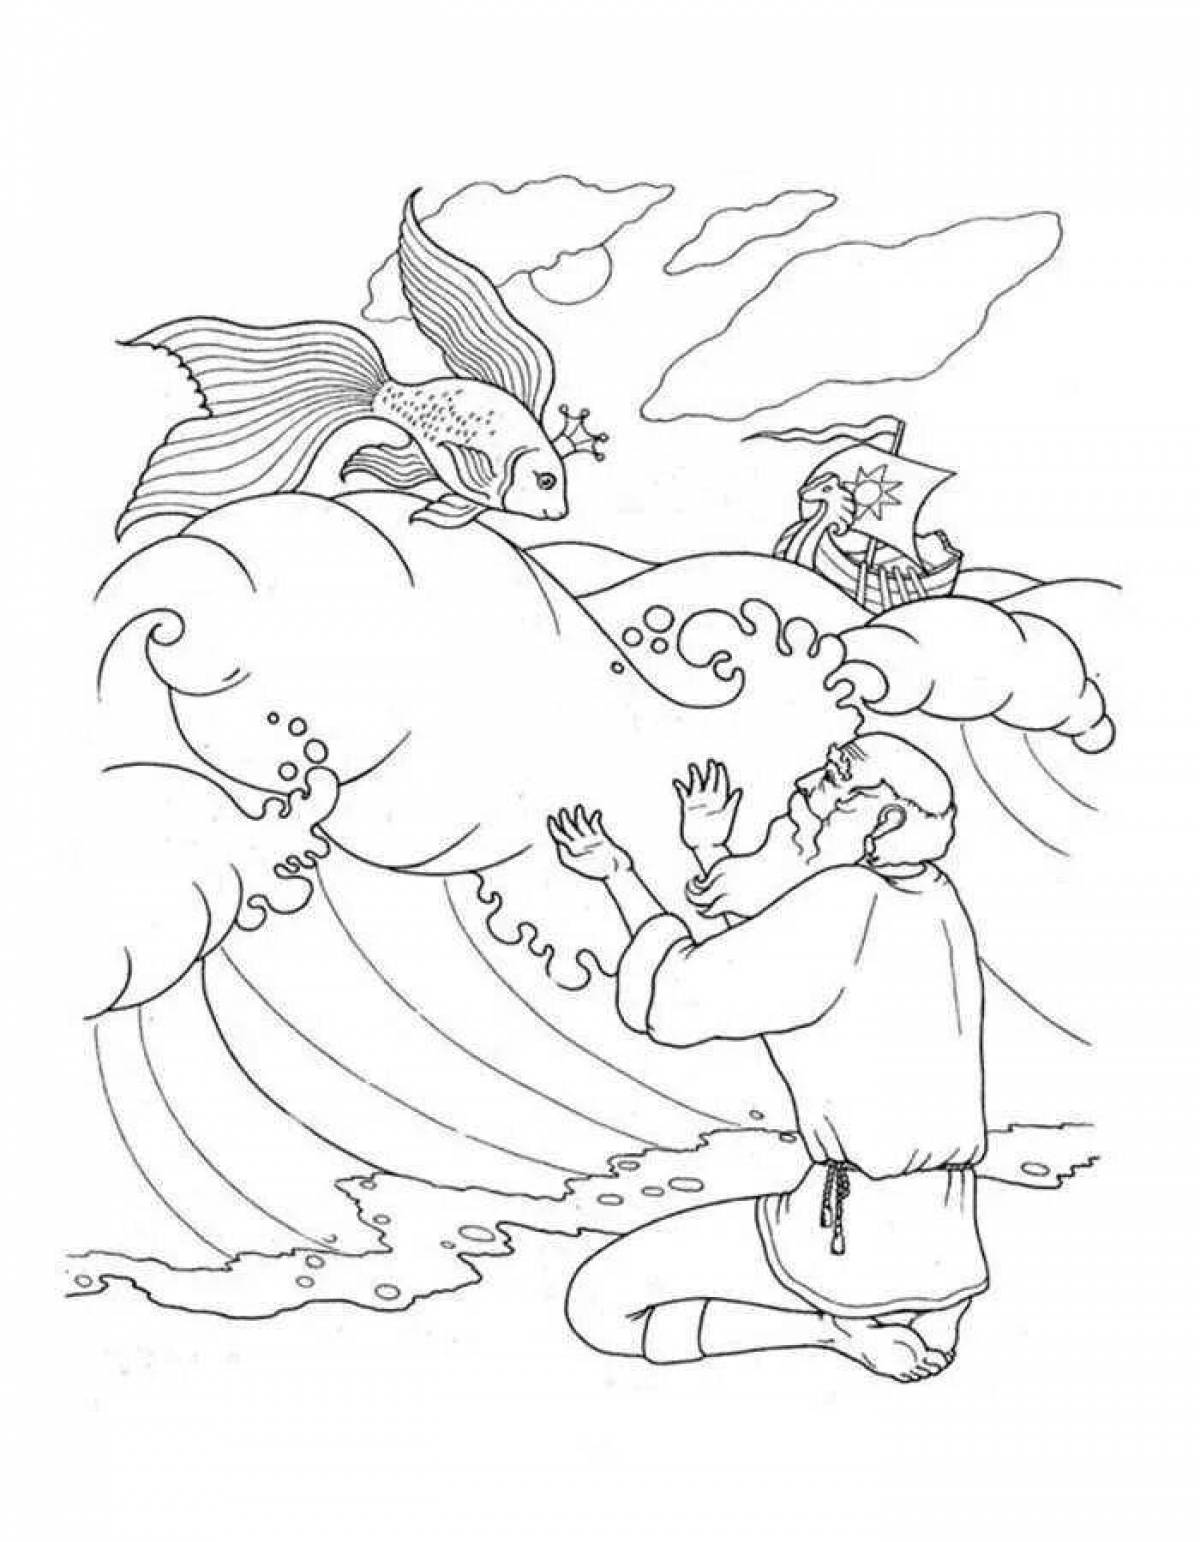 Гипнотическая раскраска иллюстрация к сказке о рыбаке и рыбке